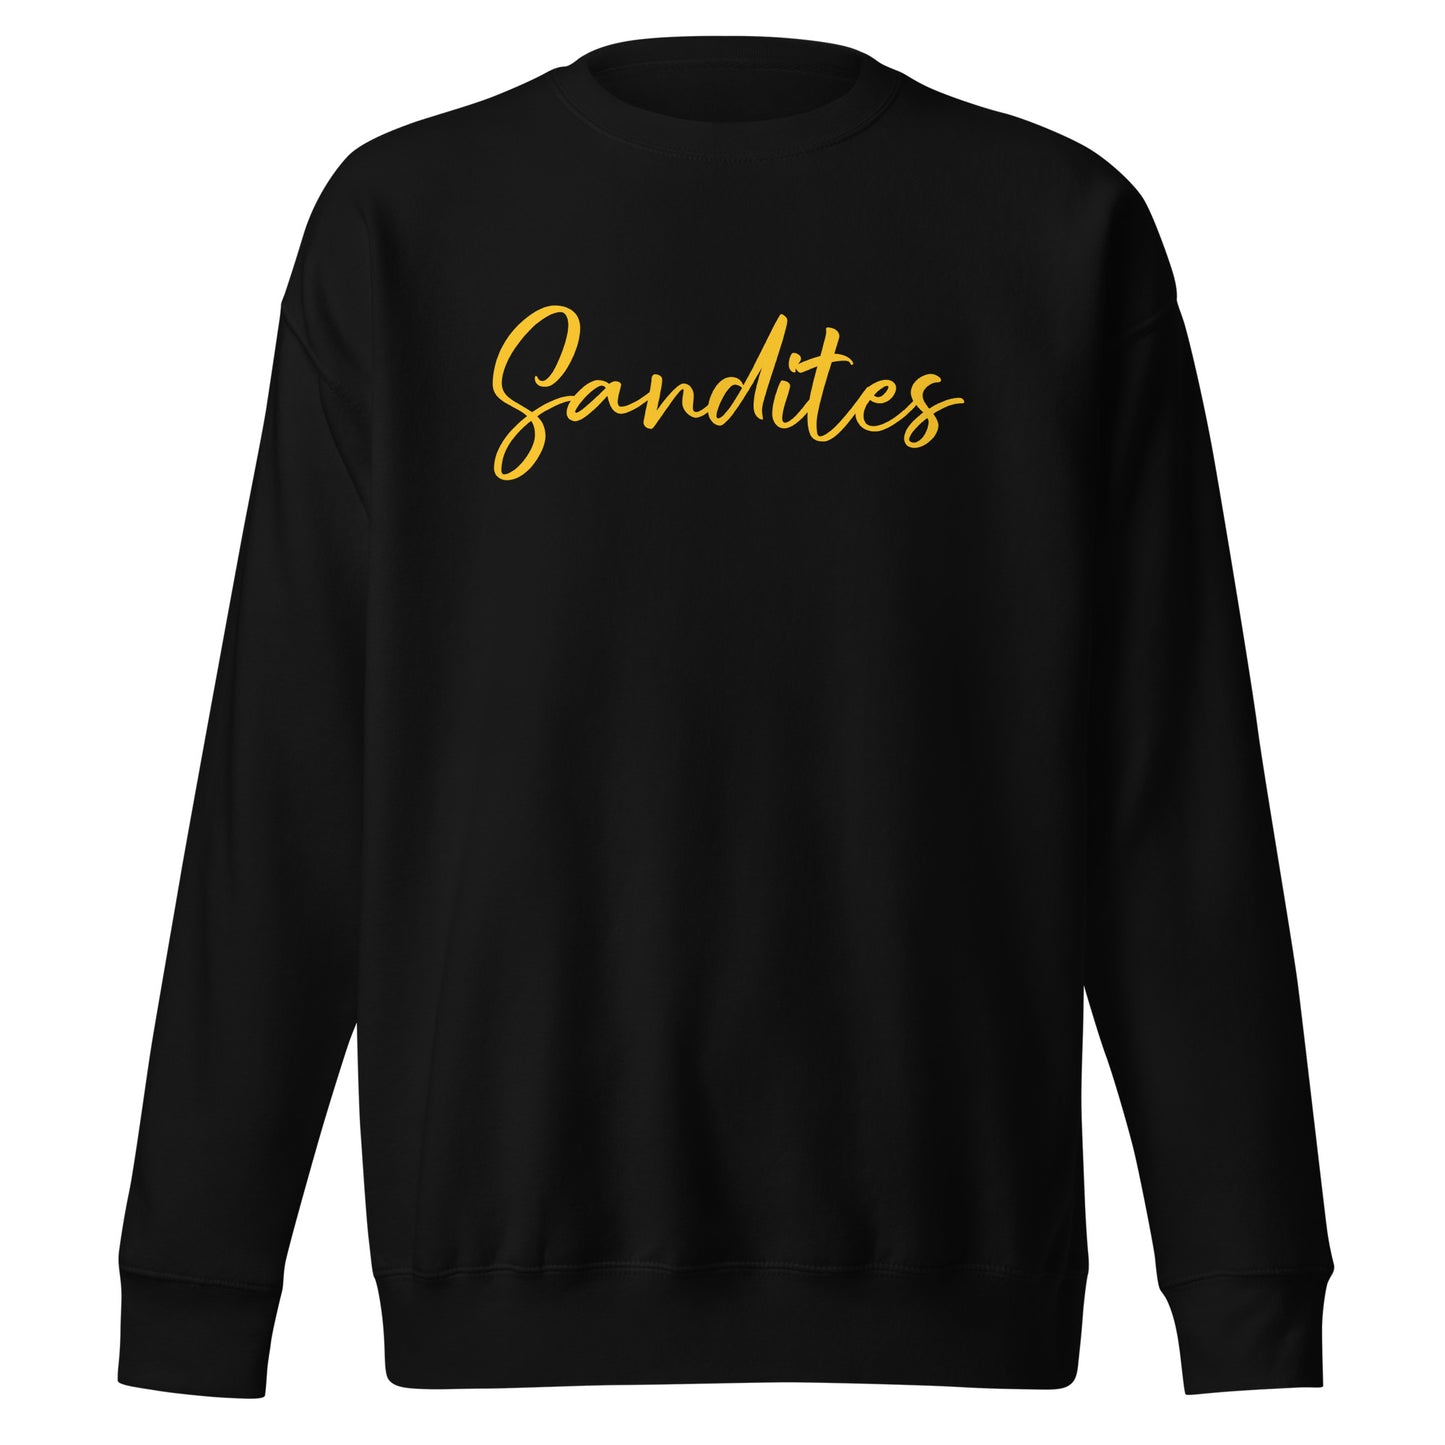 Sandites - Yellow Logo - Adult Sweatshirt